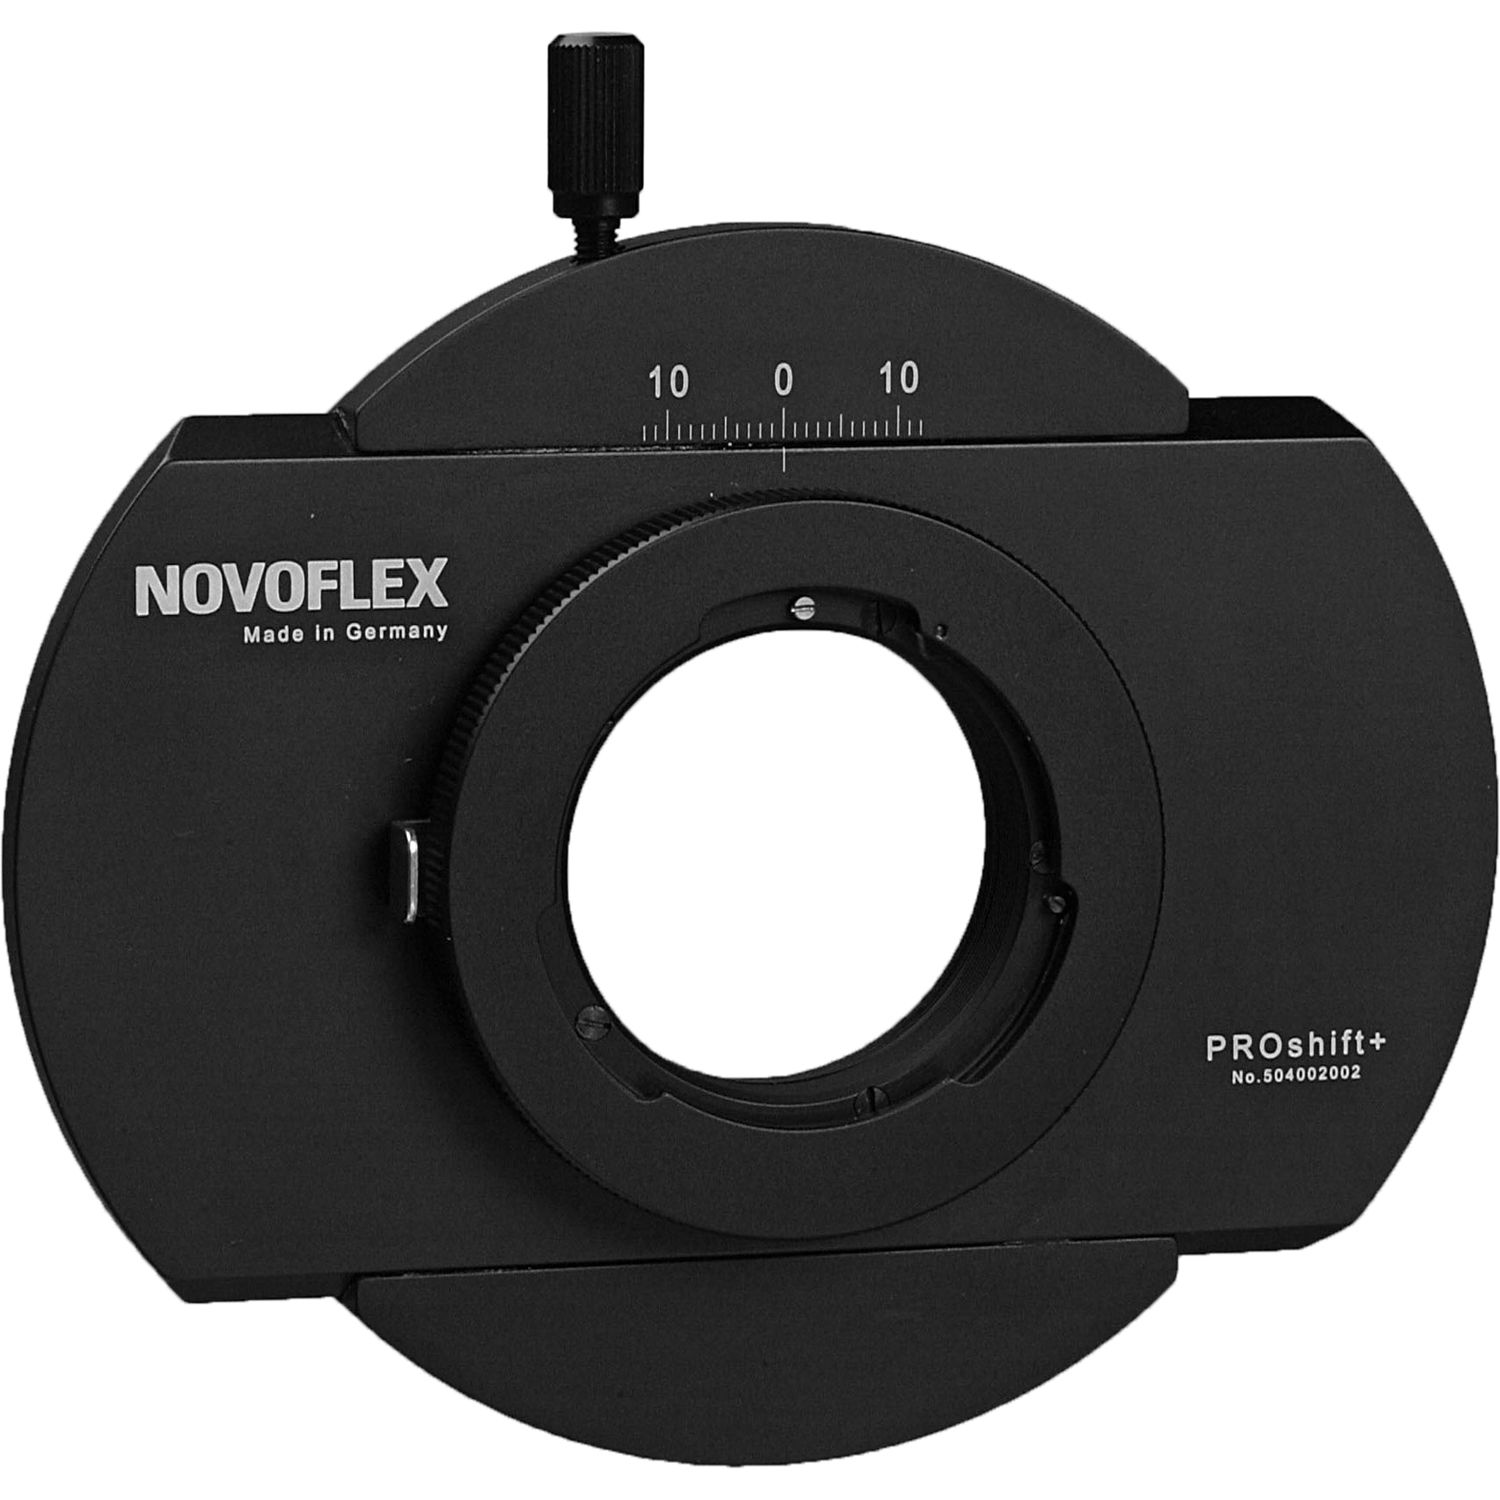 Novoflex PROSHIFT+ Adapter - Shift Adapter for Balpro Bellows and